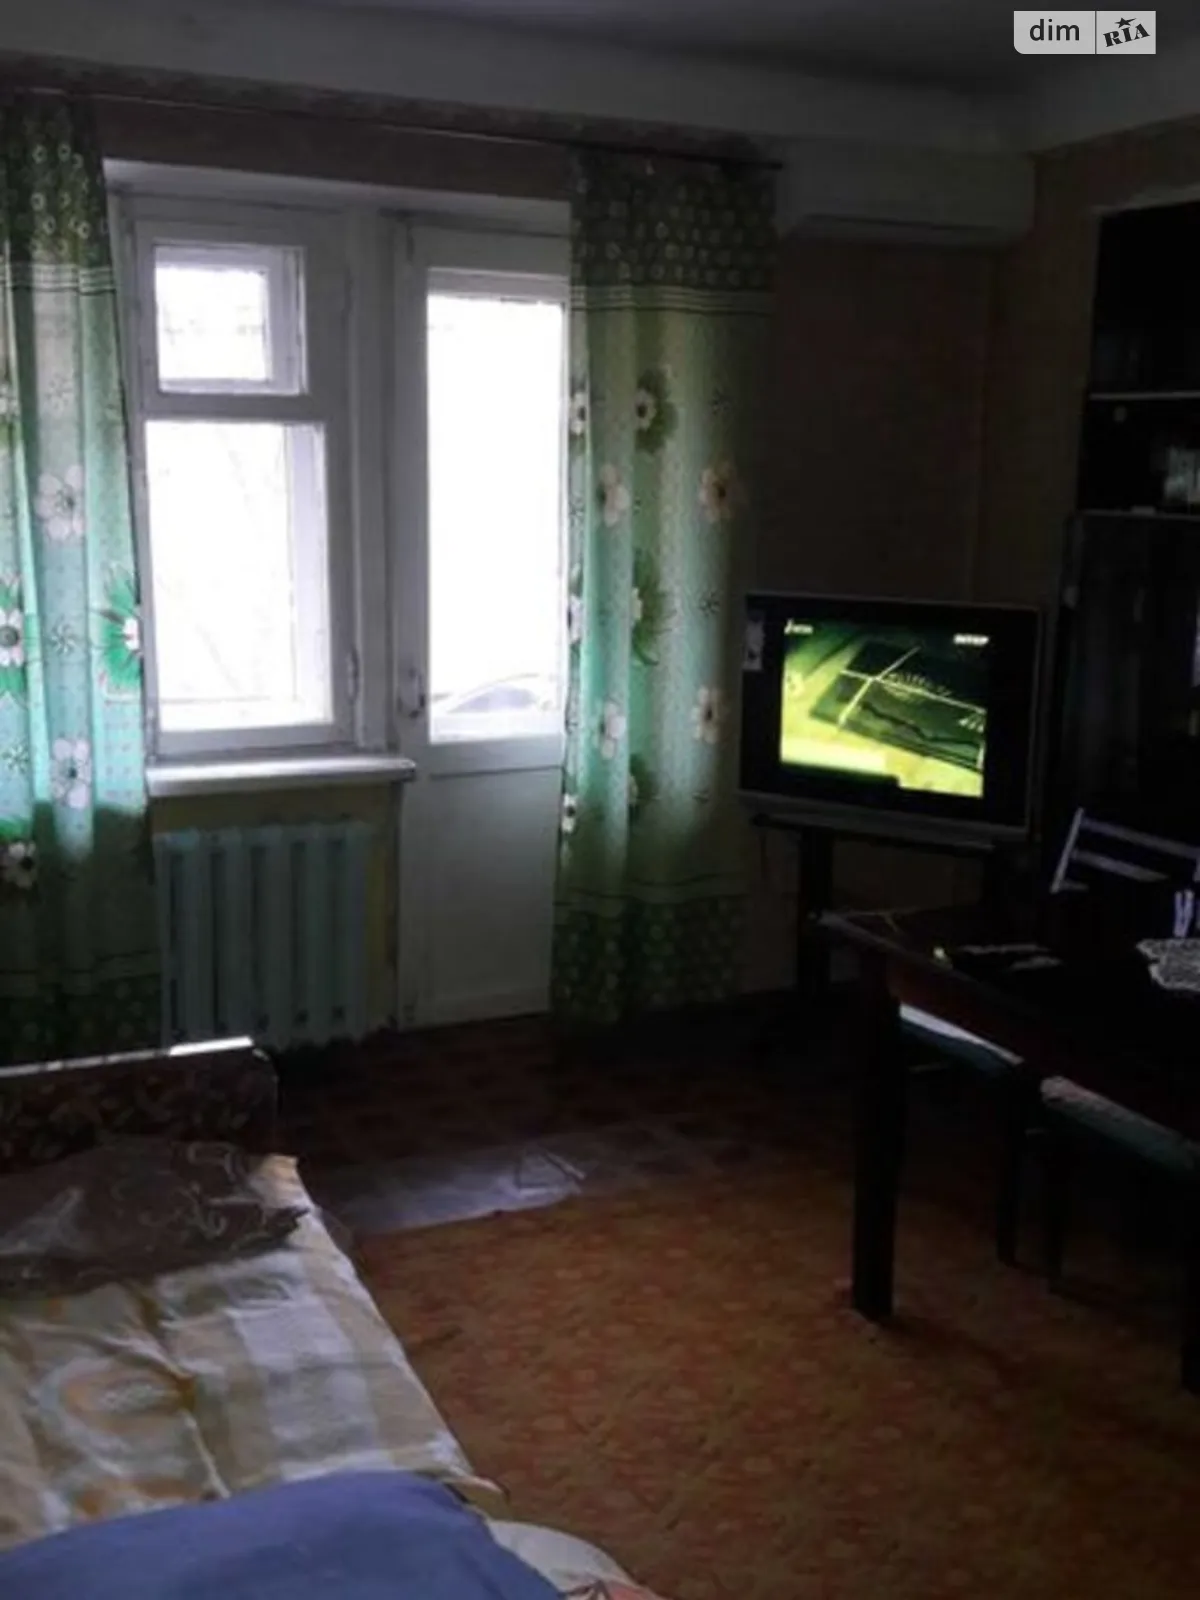 2-комнатная квартира 40 кв. м в Запорожье, ул. Лобановского